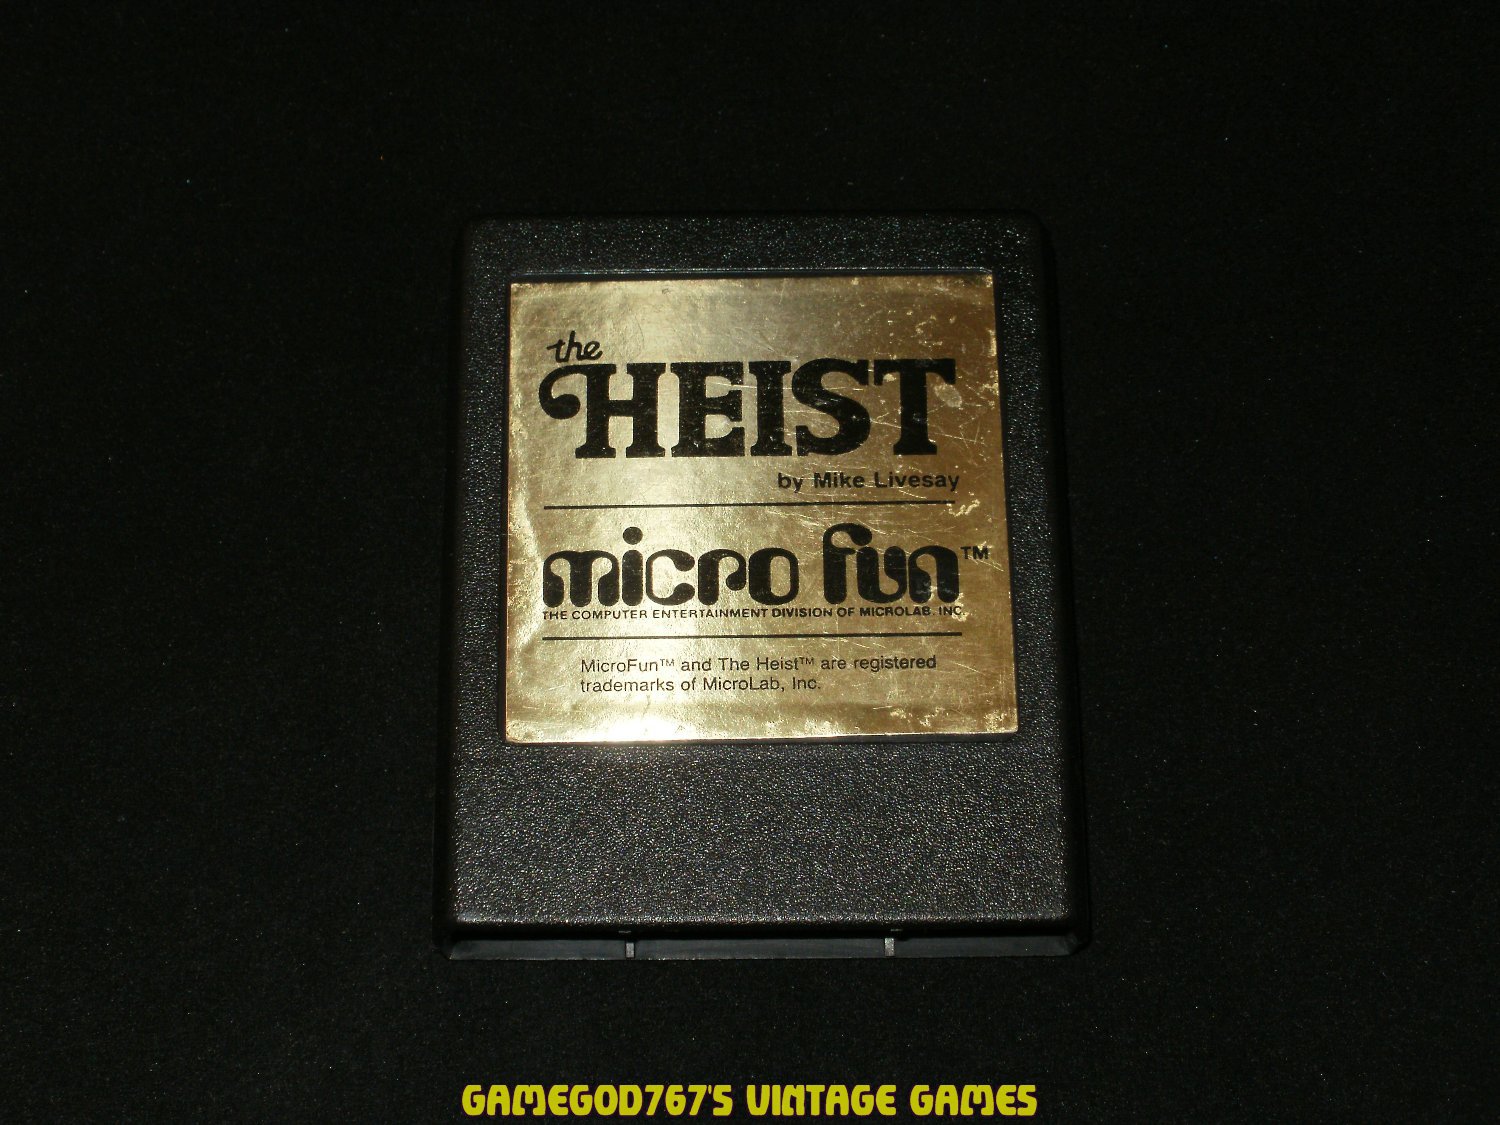 Heist - Colecovision